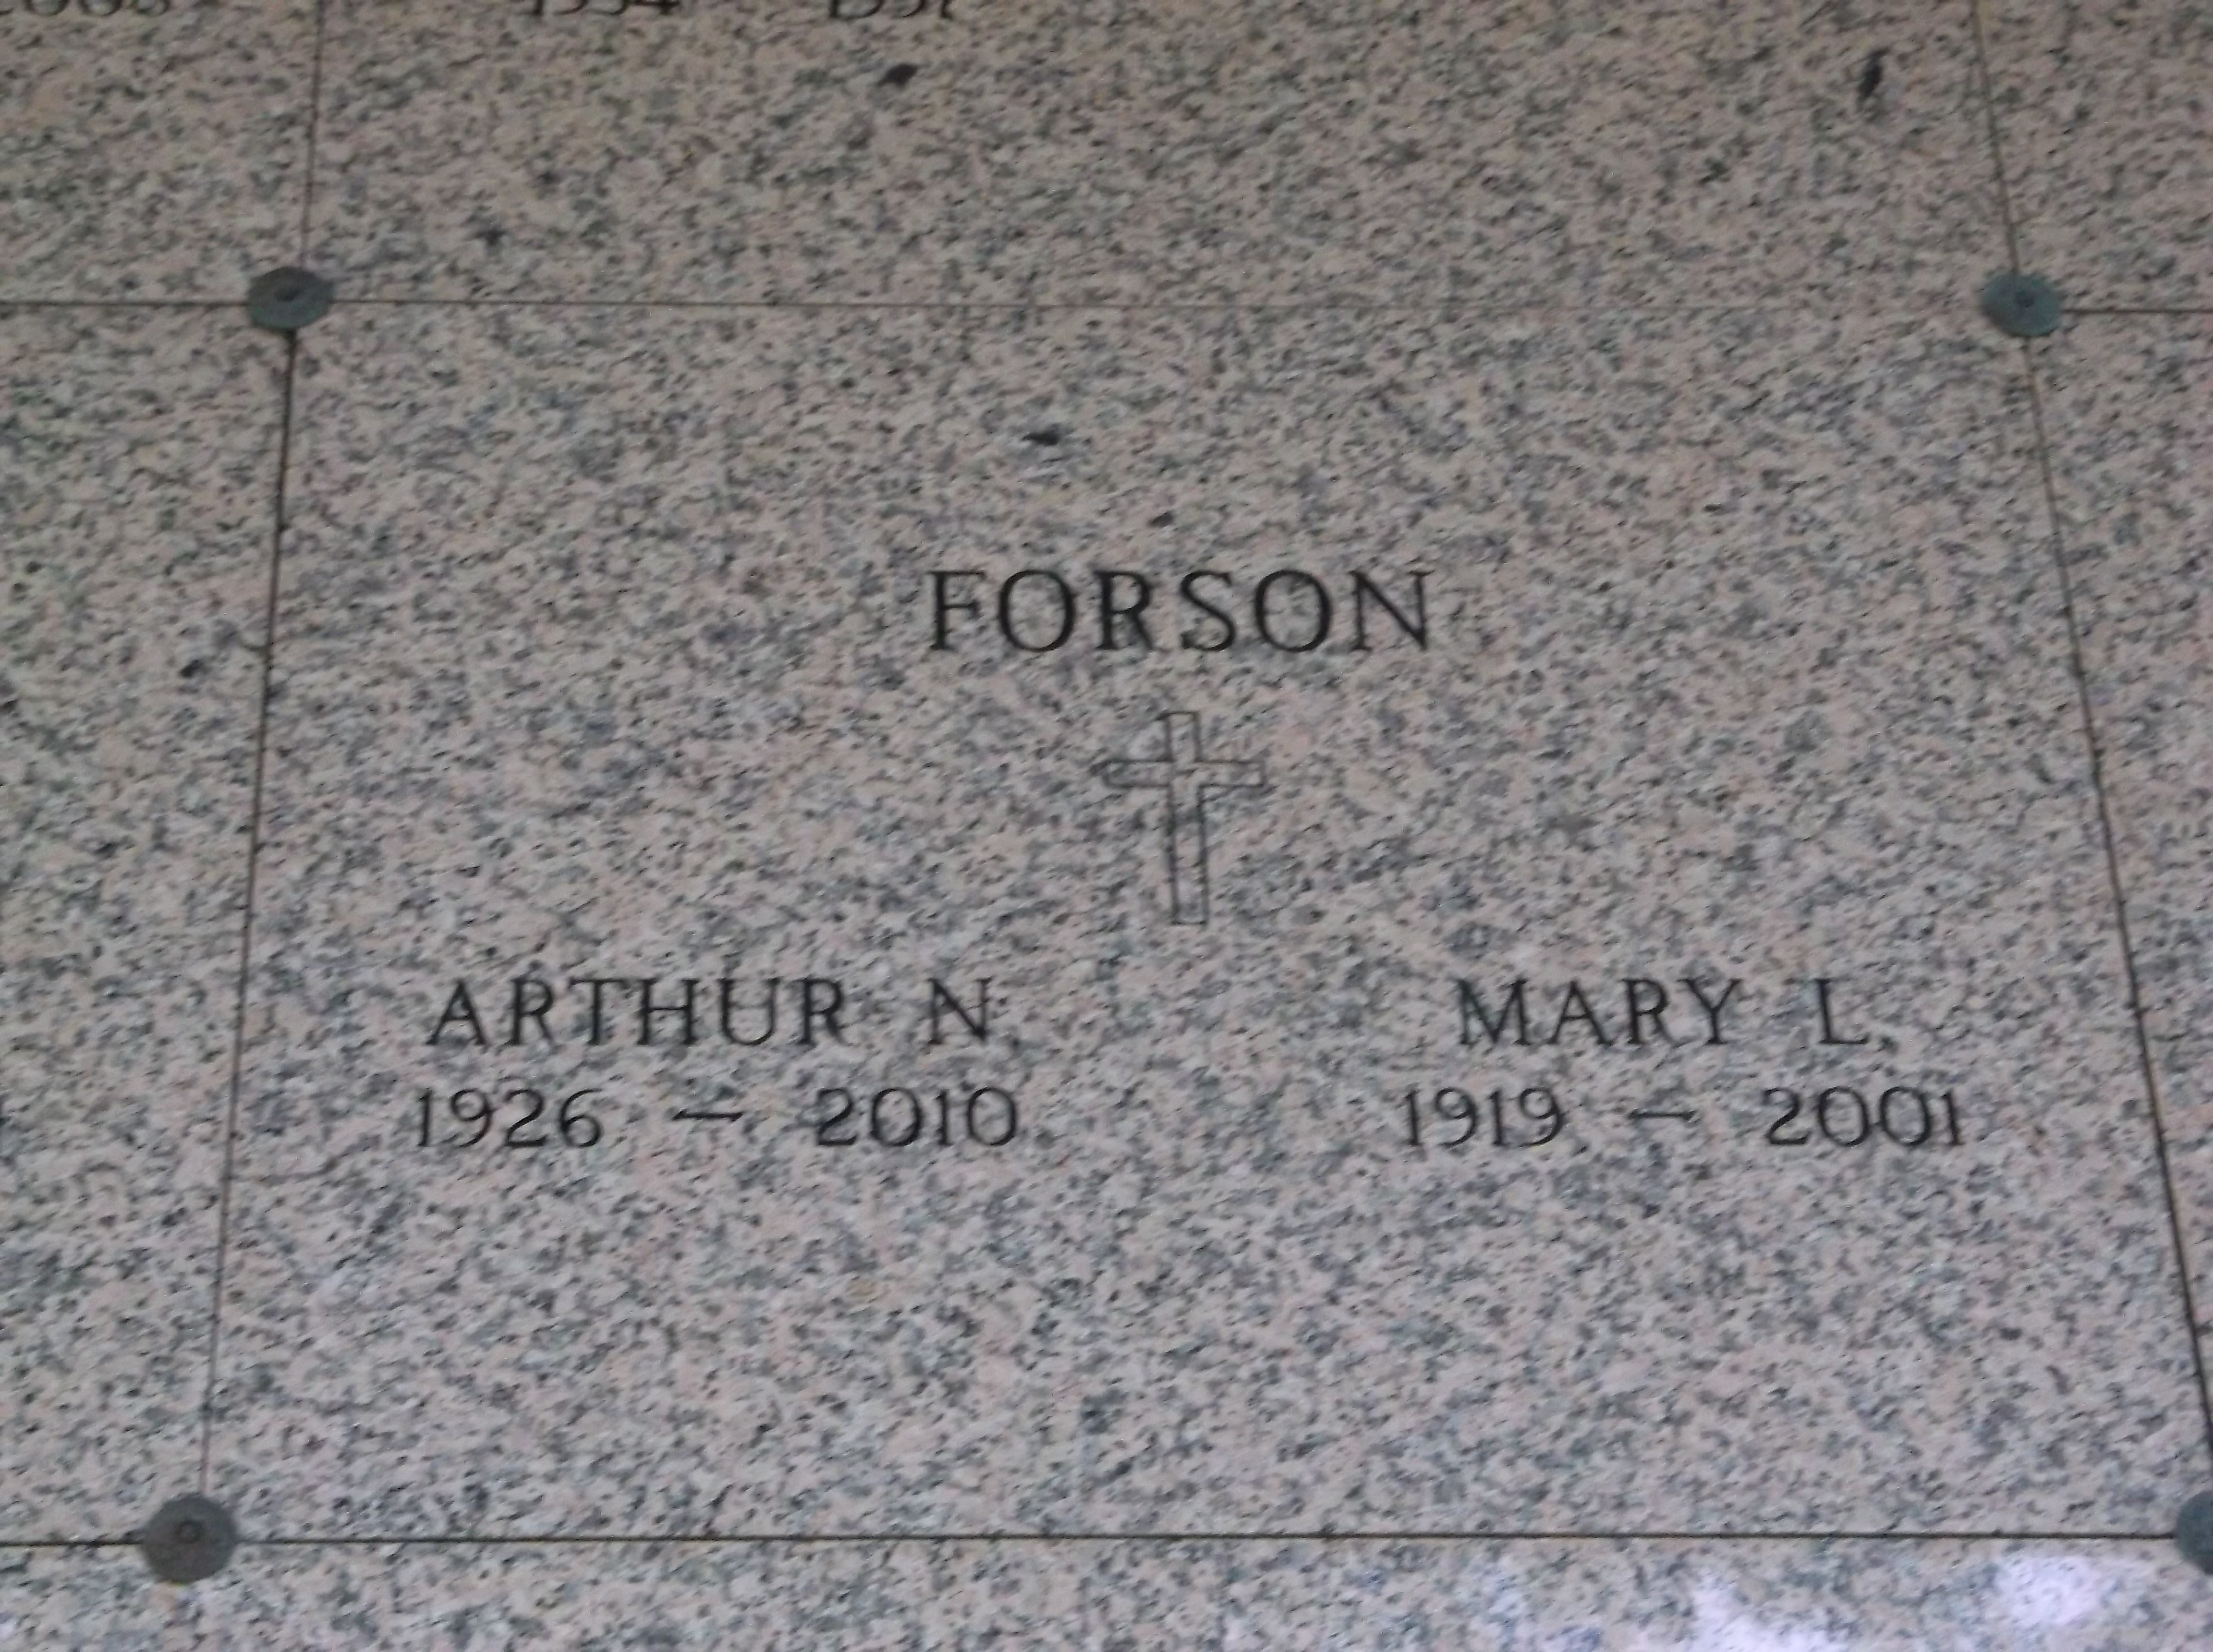 Arthur N Forson